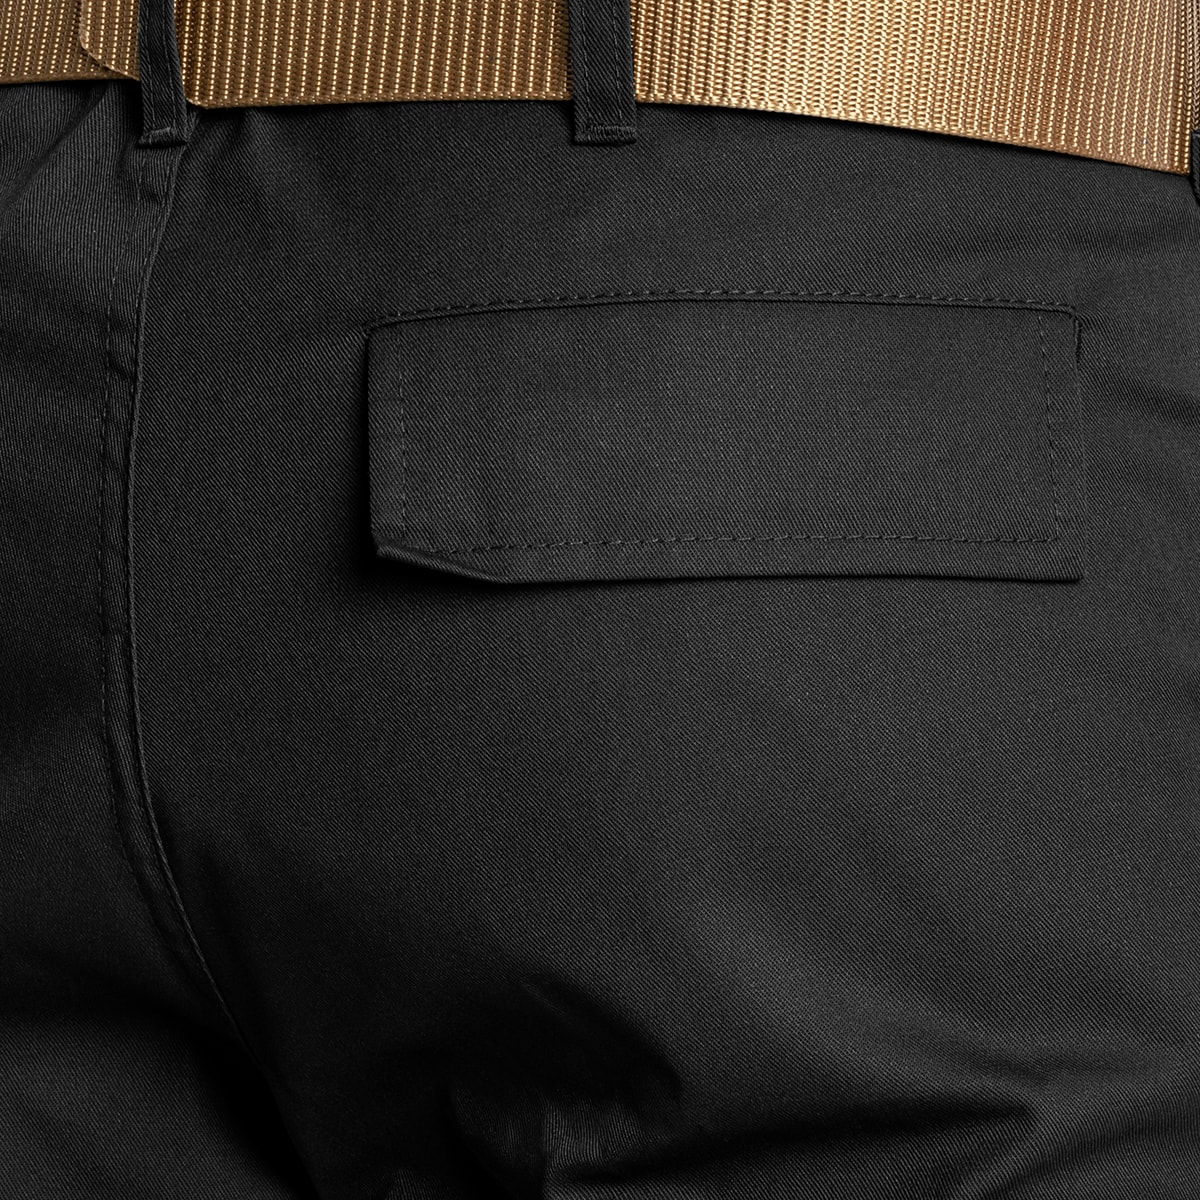 Spodnie Morowo BDU Specforce - Black